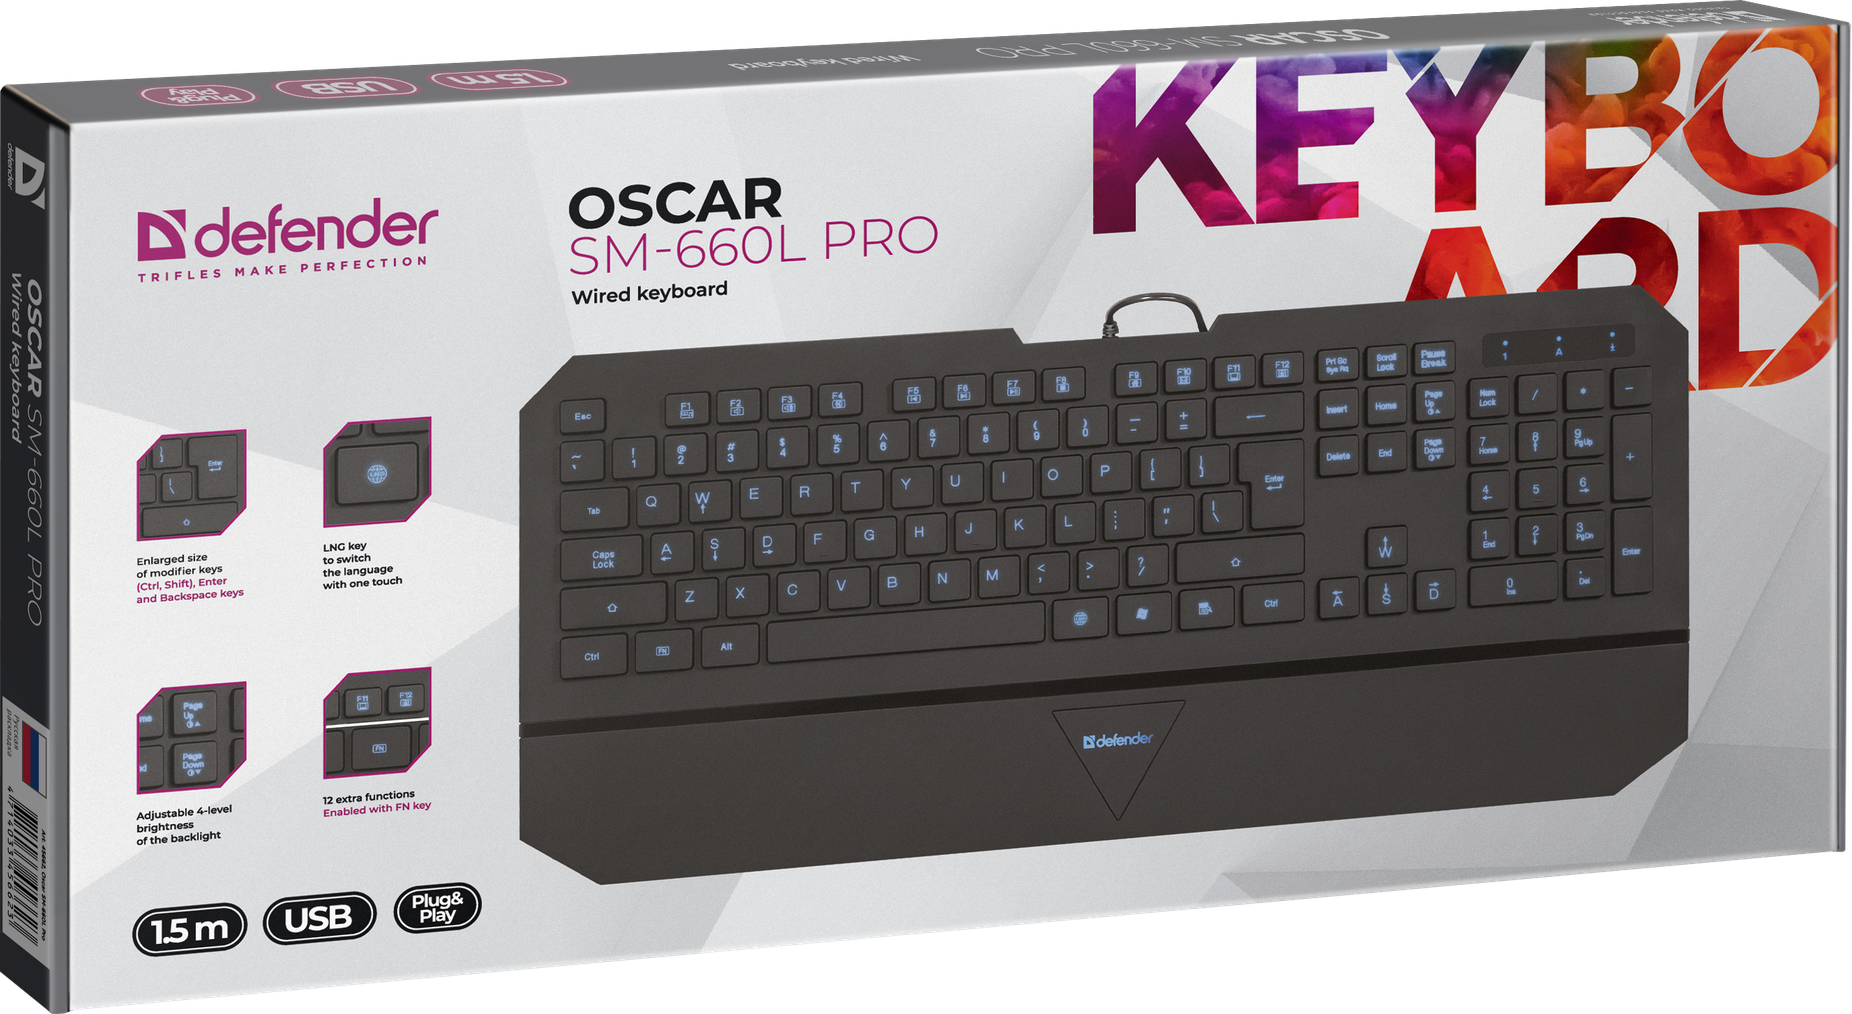 Defender oscar. Defender Keyboard Oscar SM-660l Pro. Клавиатура Defender Oscar SM-660l Pro Black. Defender Oscar SM-660l Pro. Defender Oscar SM-660l Pro Black USB.